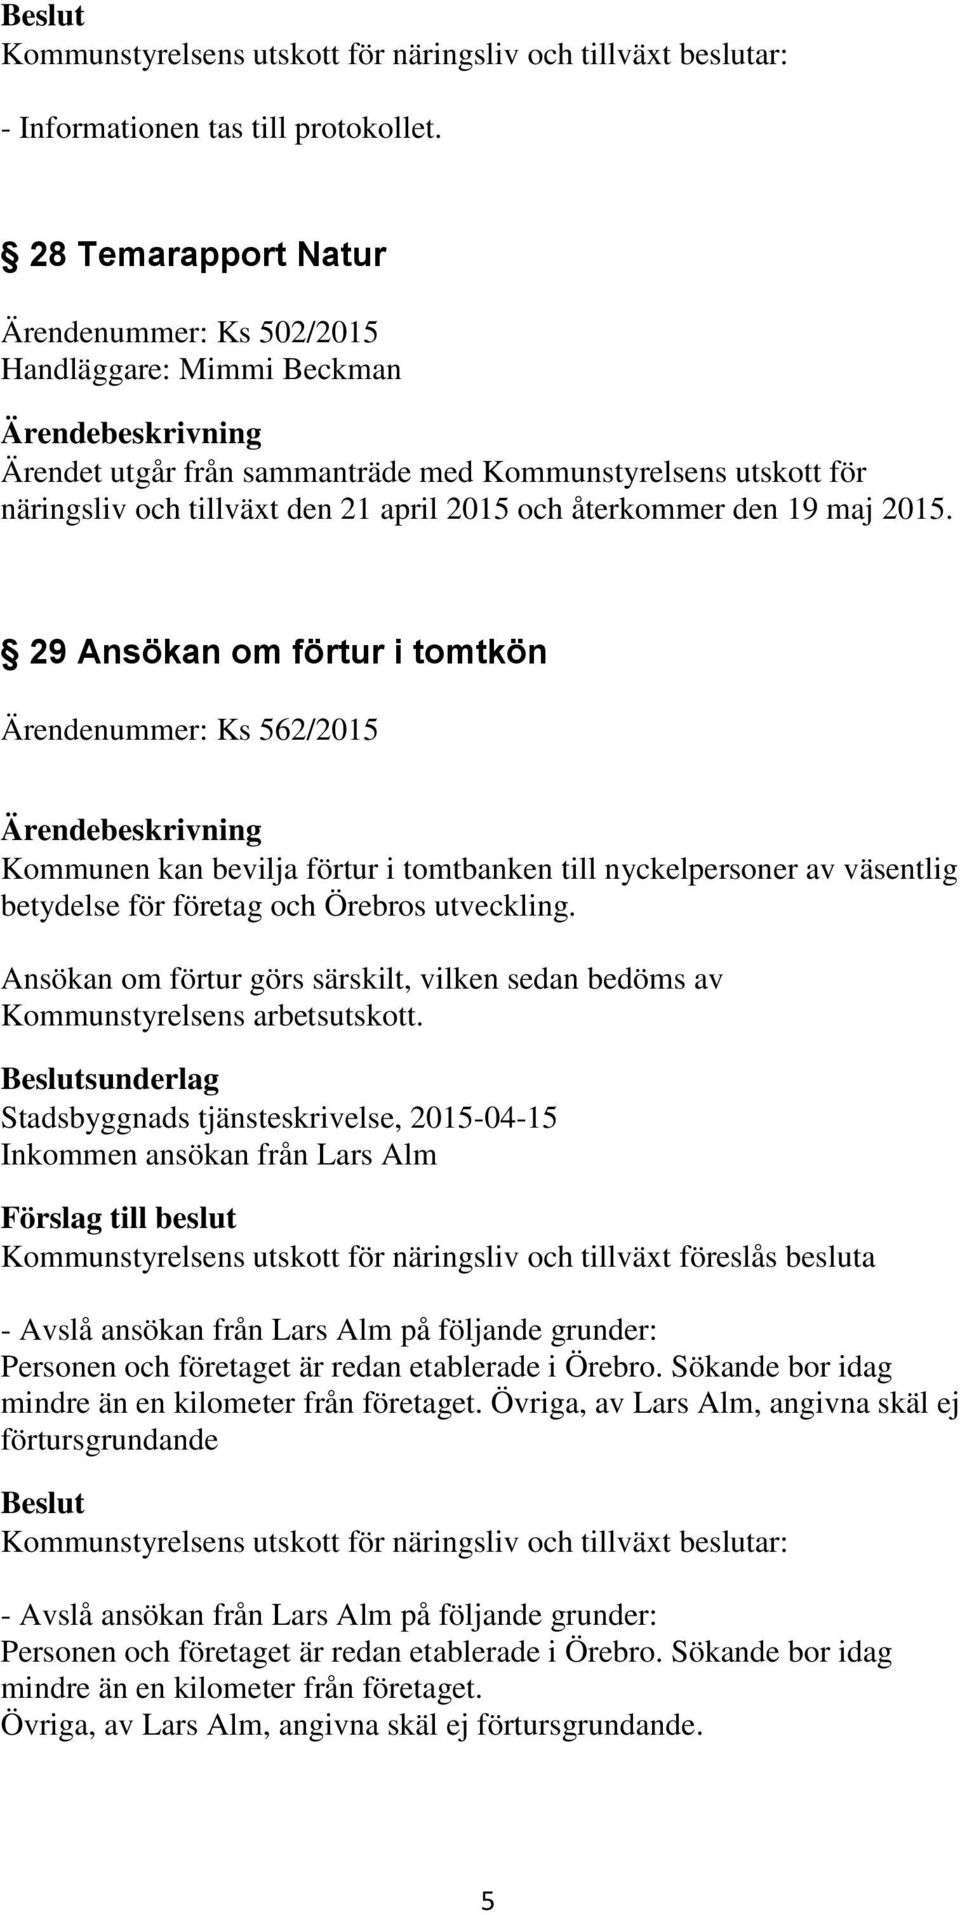 19 maj 2015. 29 Ansökan om förtur i tomtkön Ärendenummer: Ks 562/2015 Kommunen kan bevilja förtur i tomtbanken till nyckelpersoner av väsentlig betydelse för företag och Örebros utveckling.